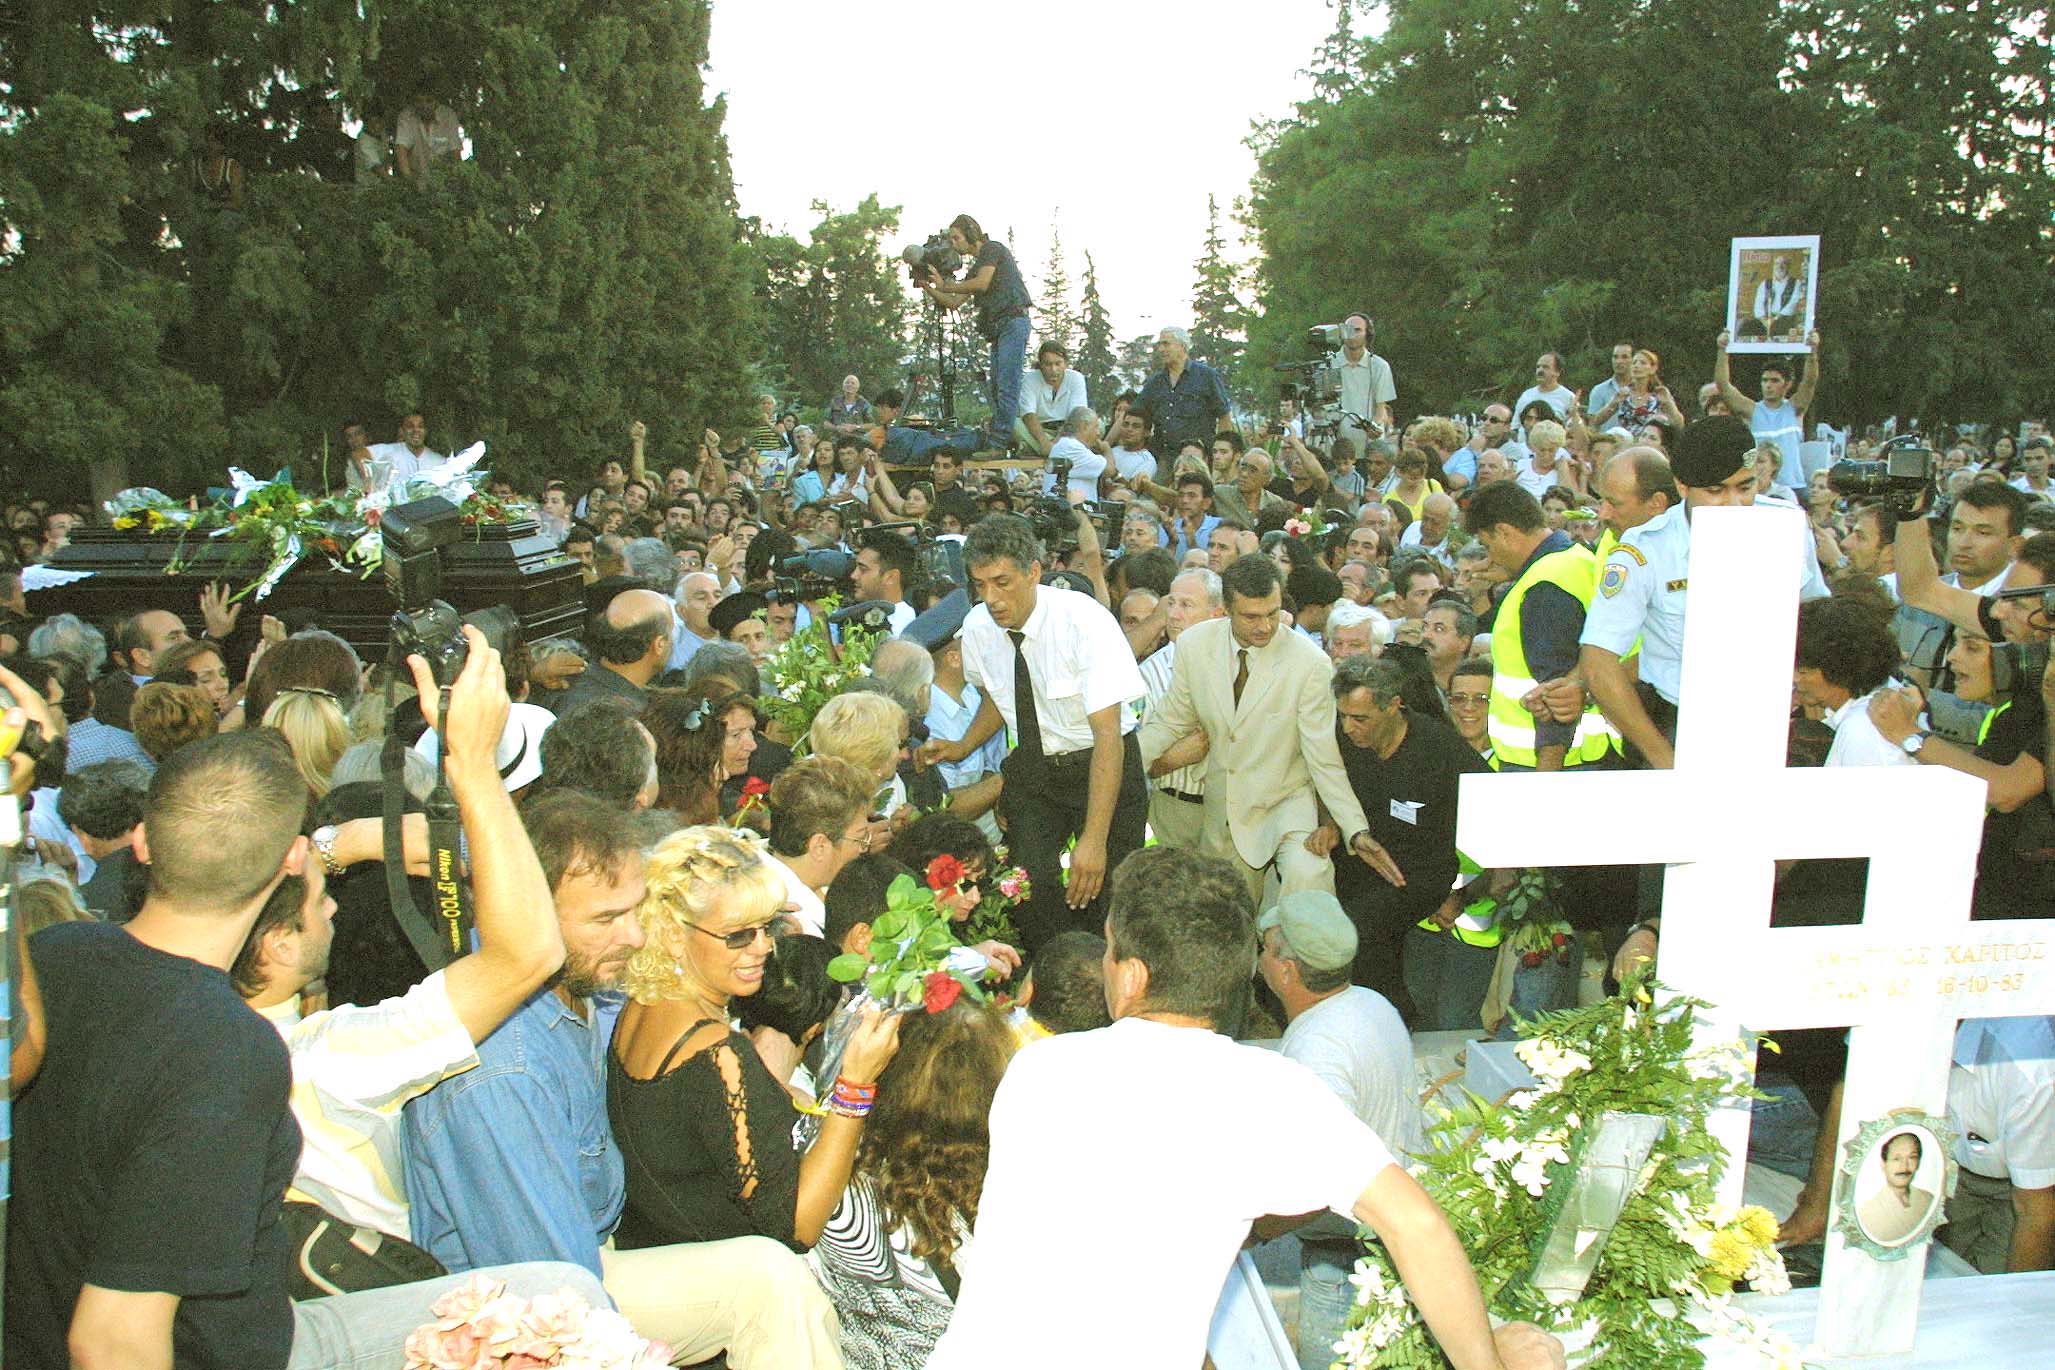 Στιγμιότυπο από την κηδεία του Στέλιου Καζαντζίδη στην Ελευσίνα, 16 Σεπτεμβρίου 2001